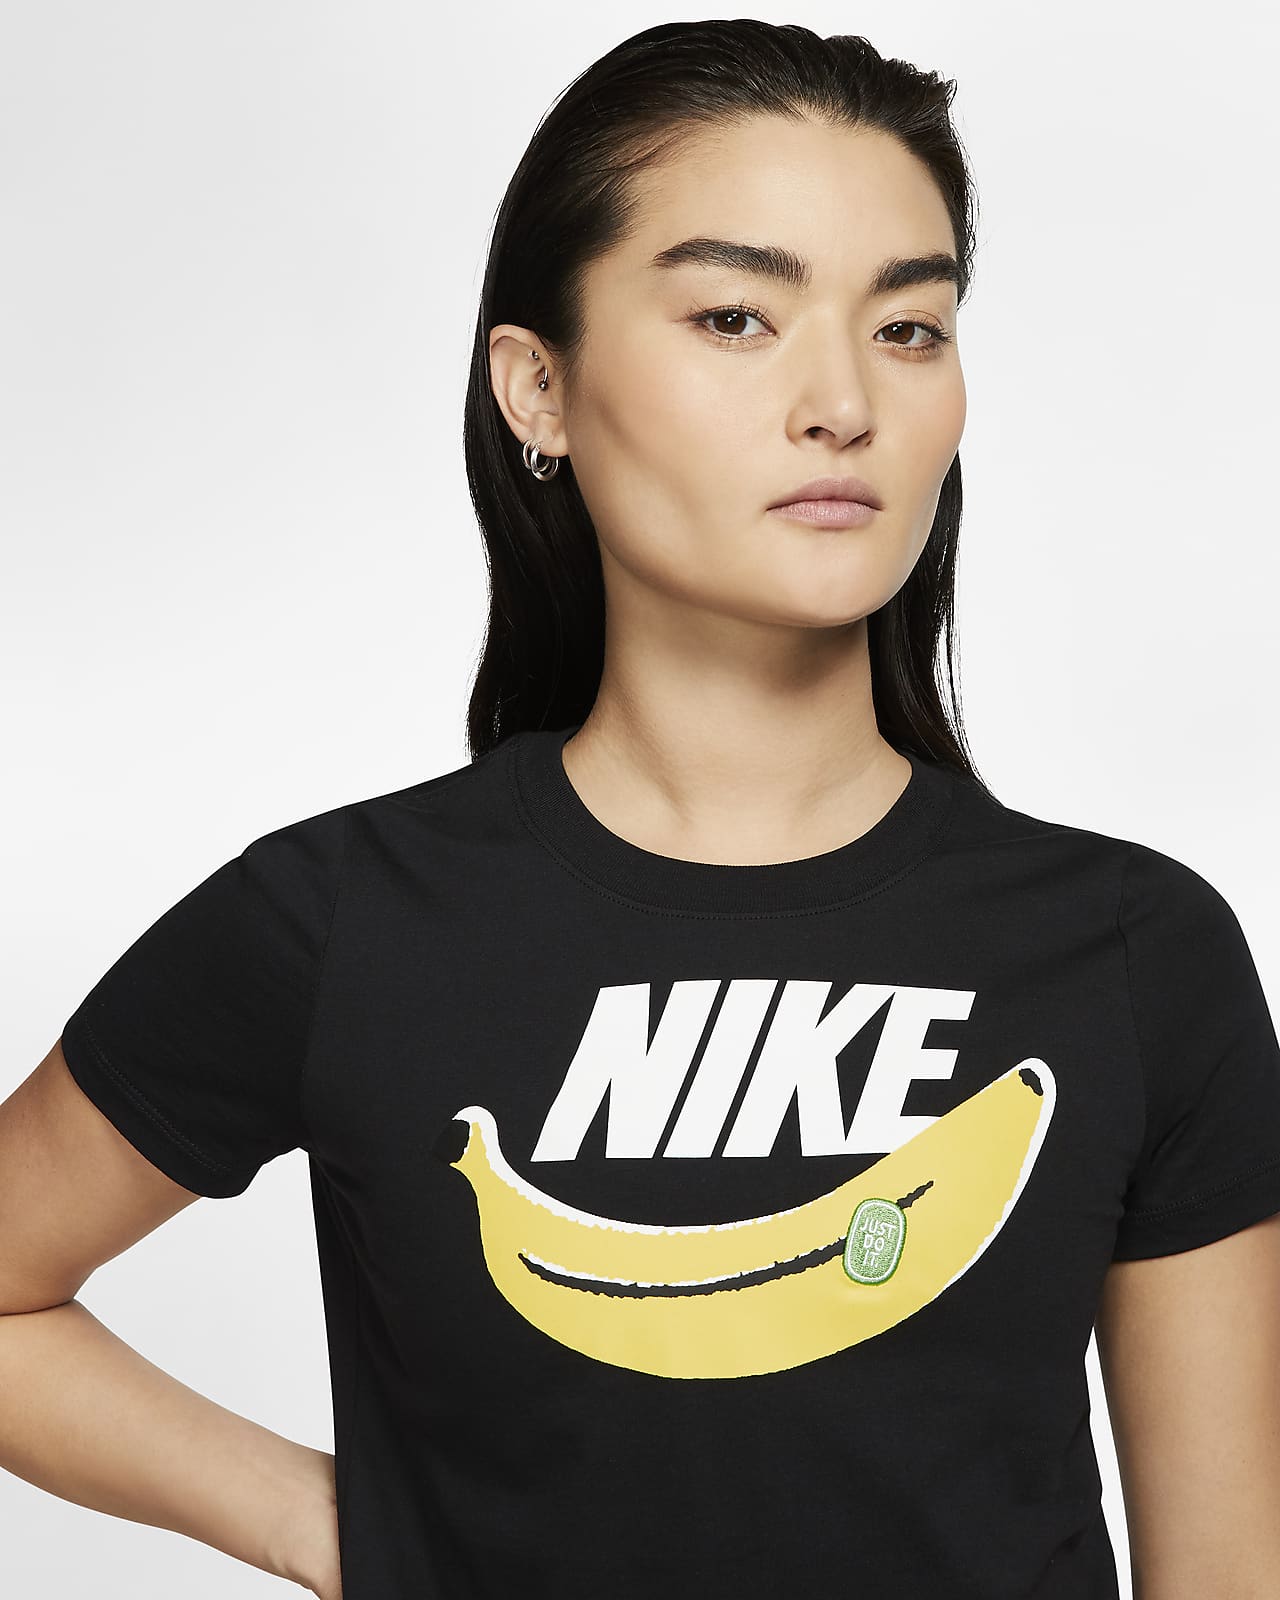 nike banana t shirt